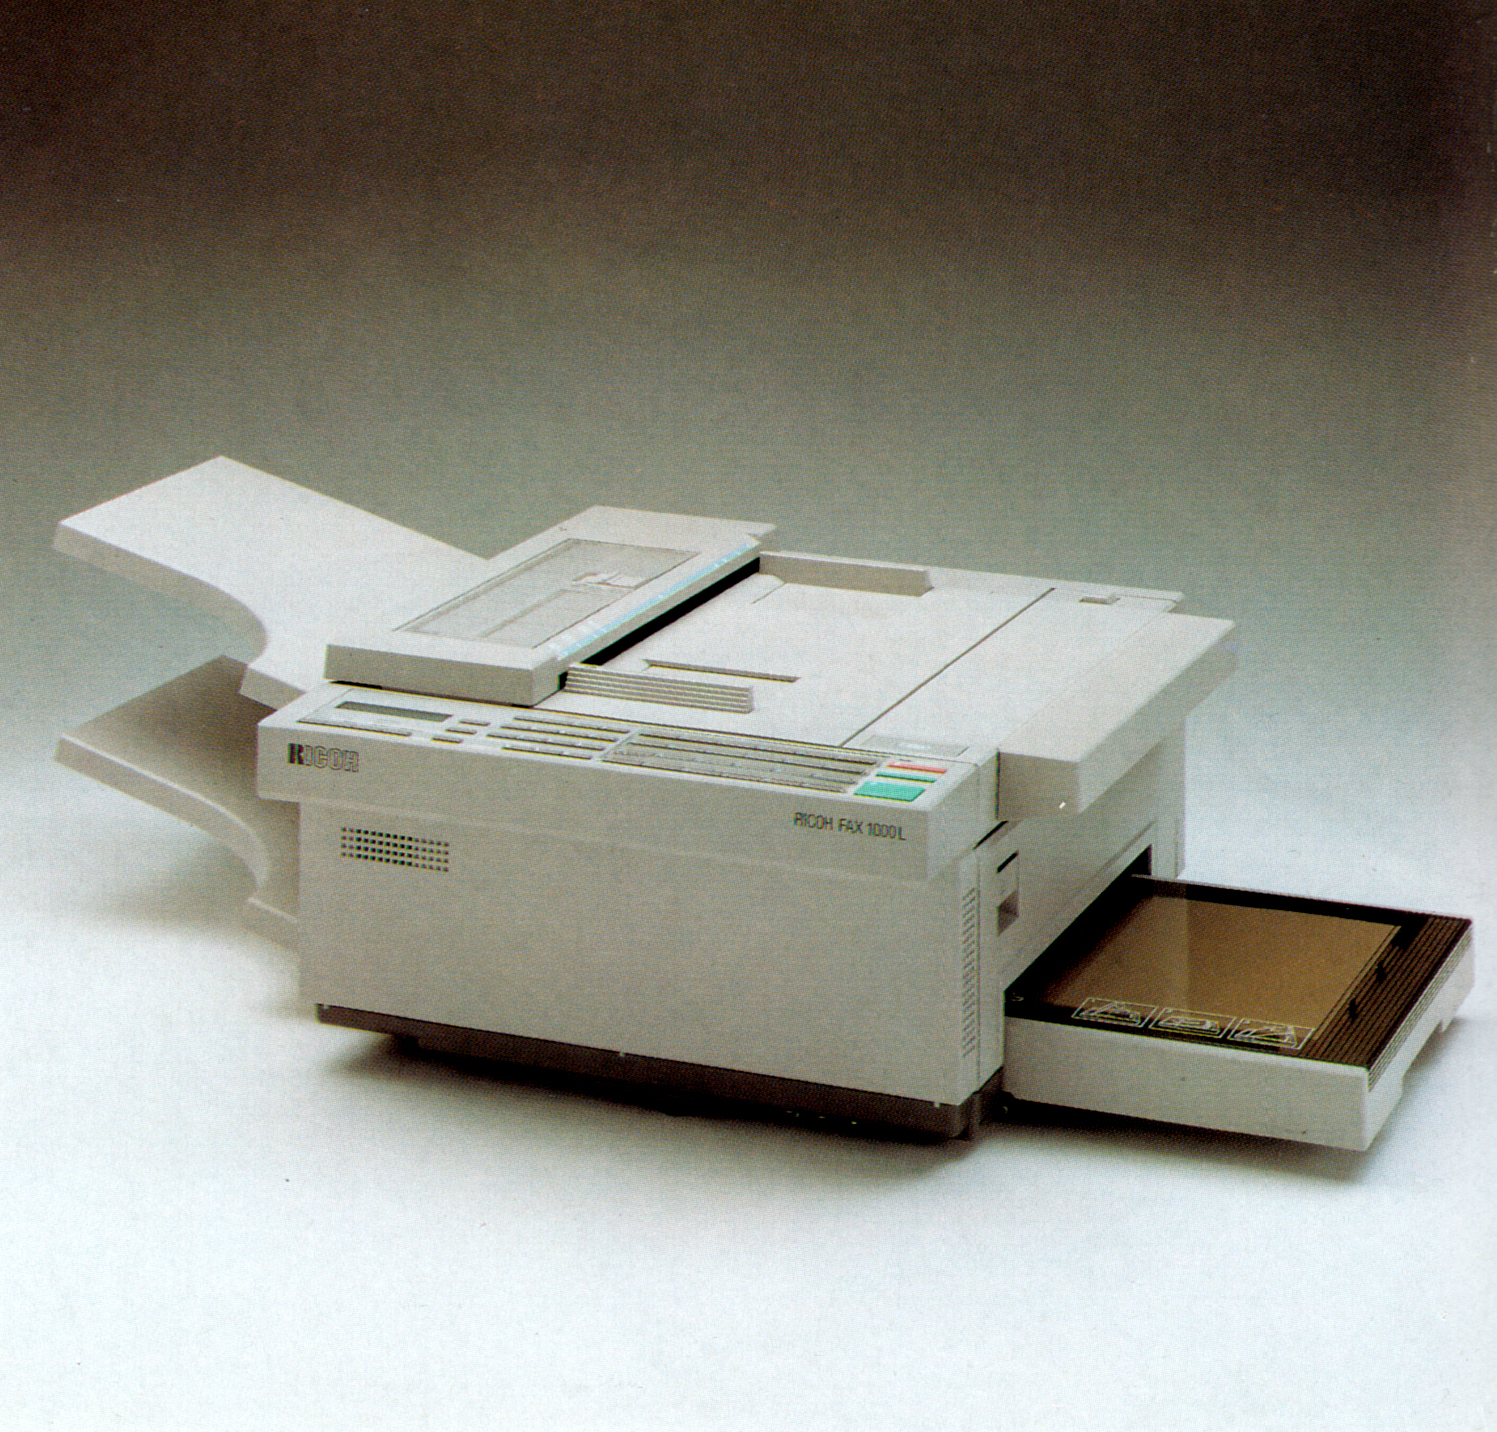 RICOH FAX 1000L Laserdrucker-Fernkopierer